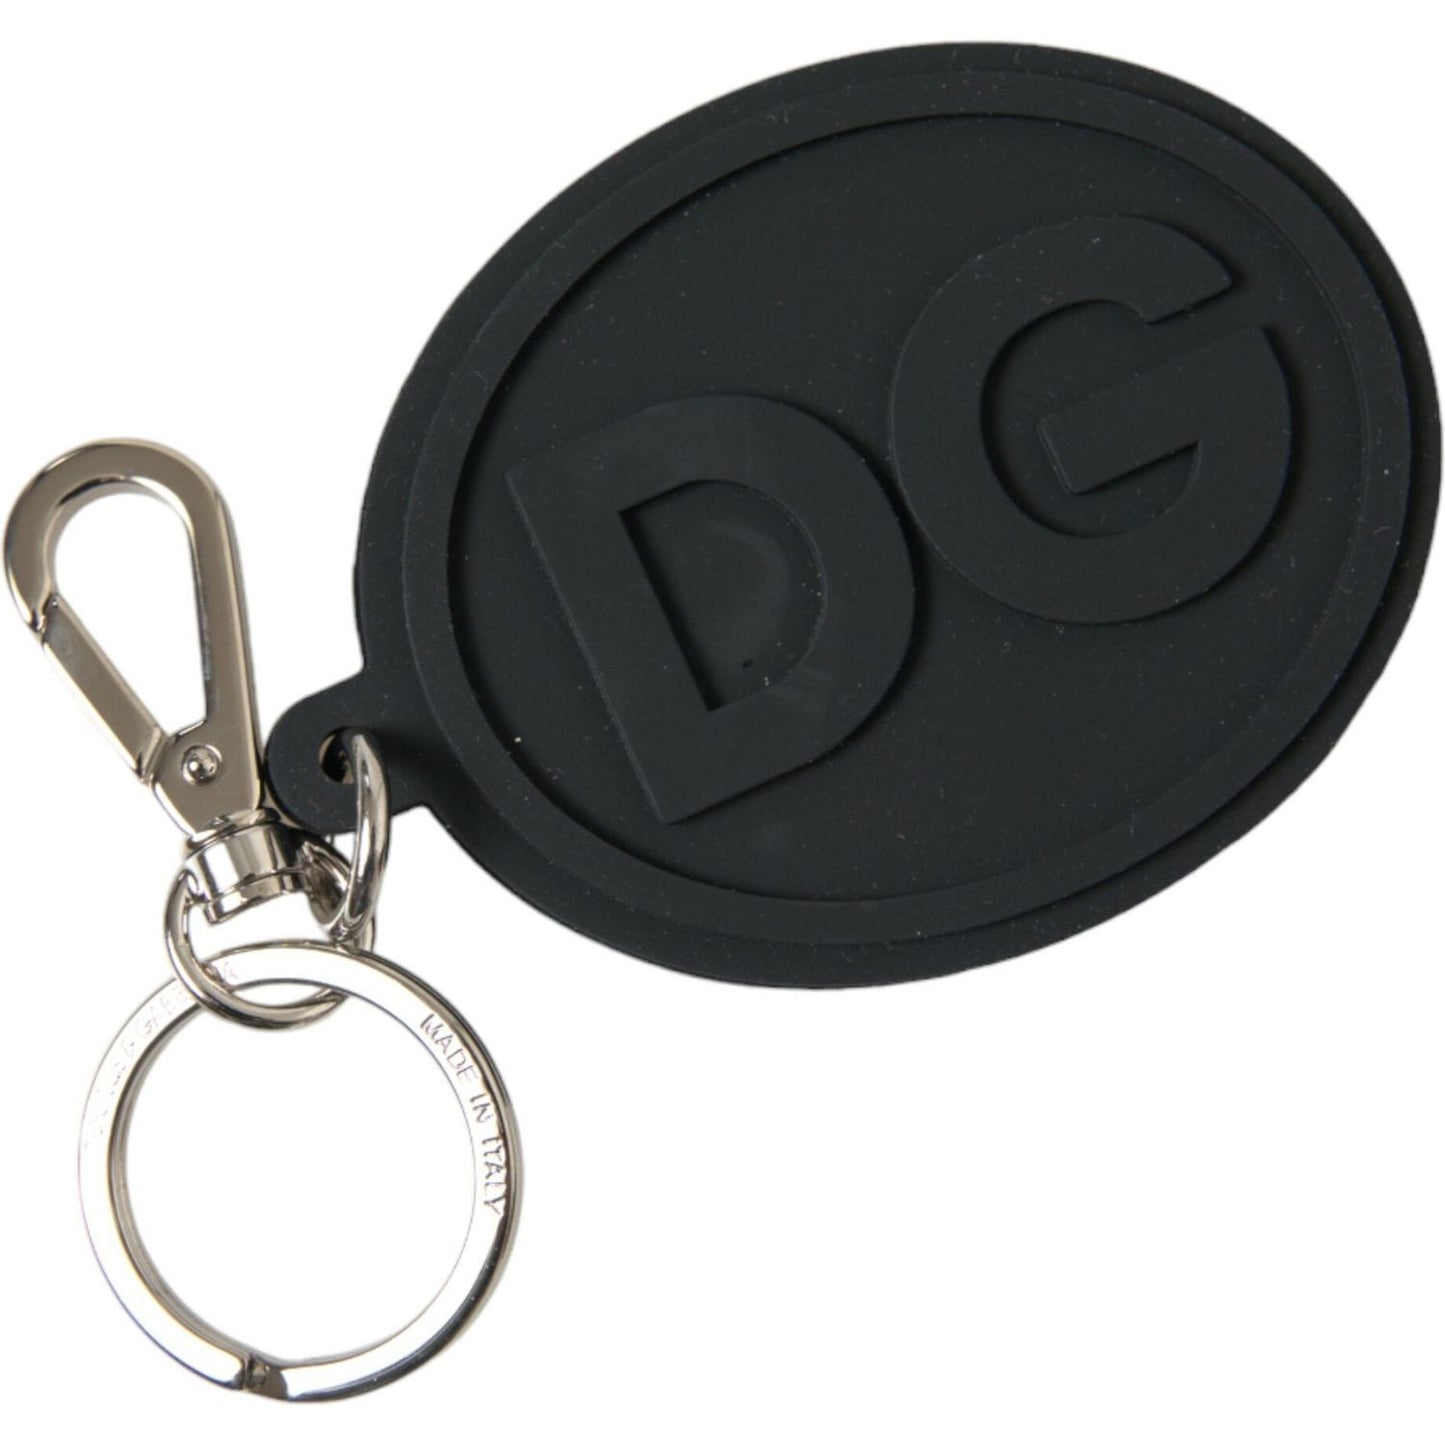 Dolce & GabbanaChic Black and Silver Logo KeychainMcRichard Designer Brands£139.00